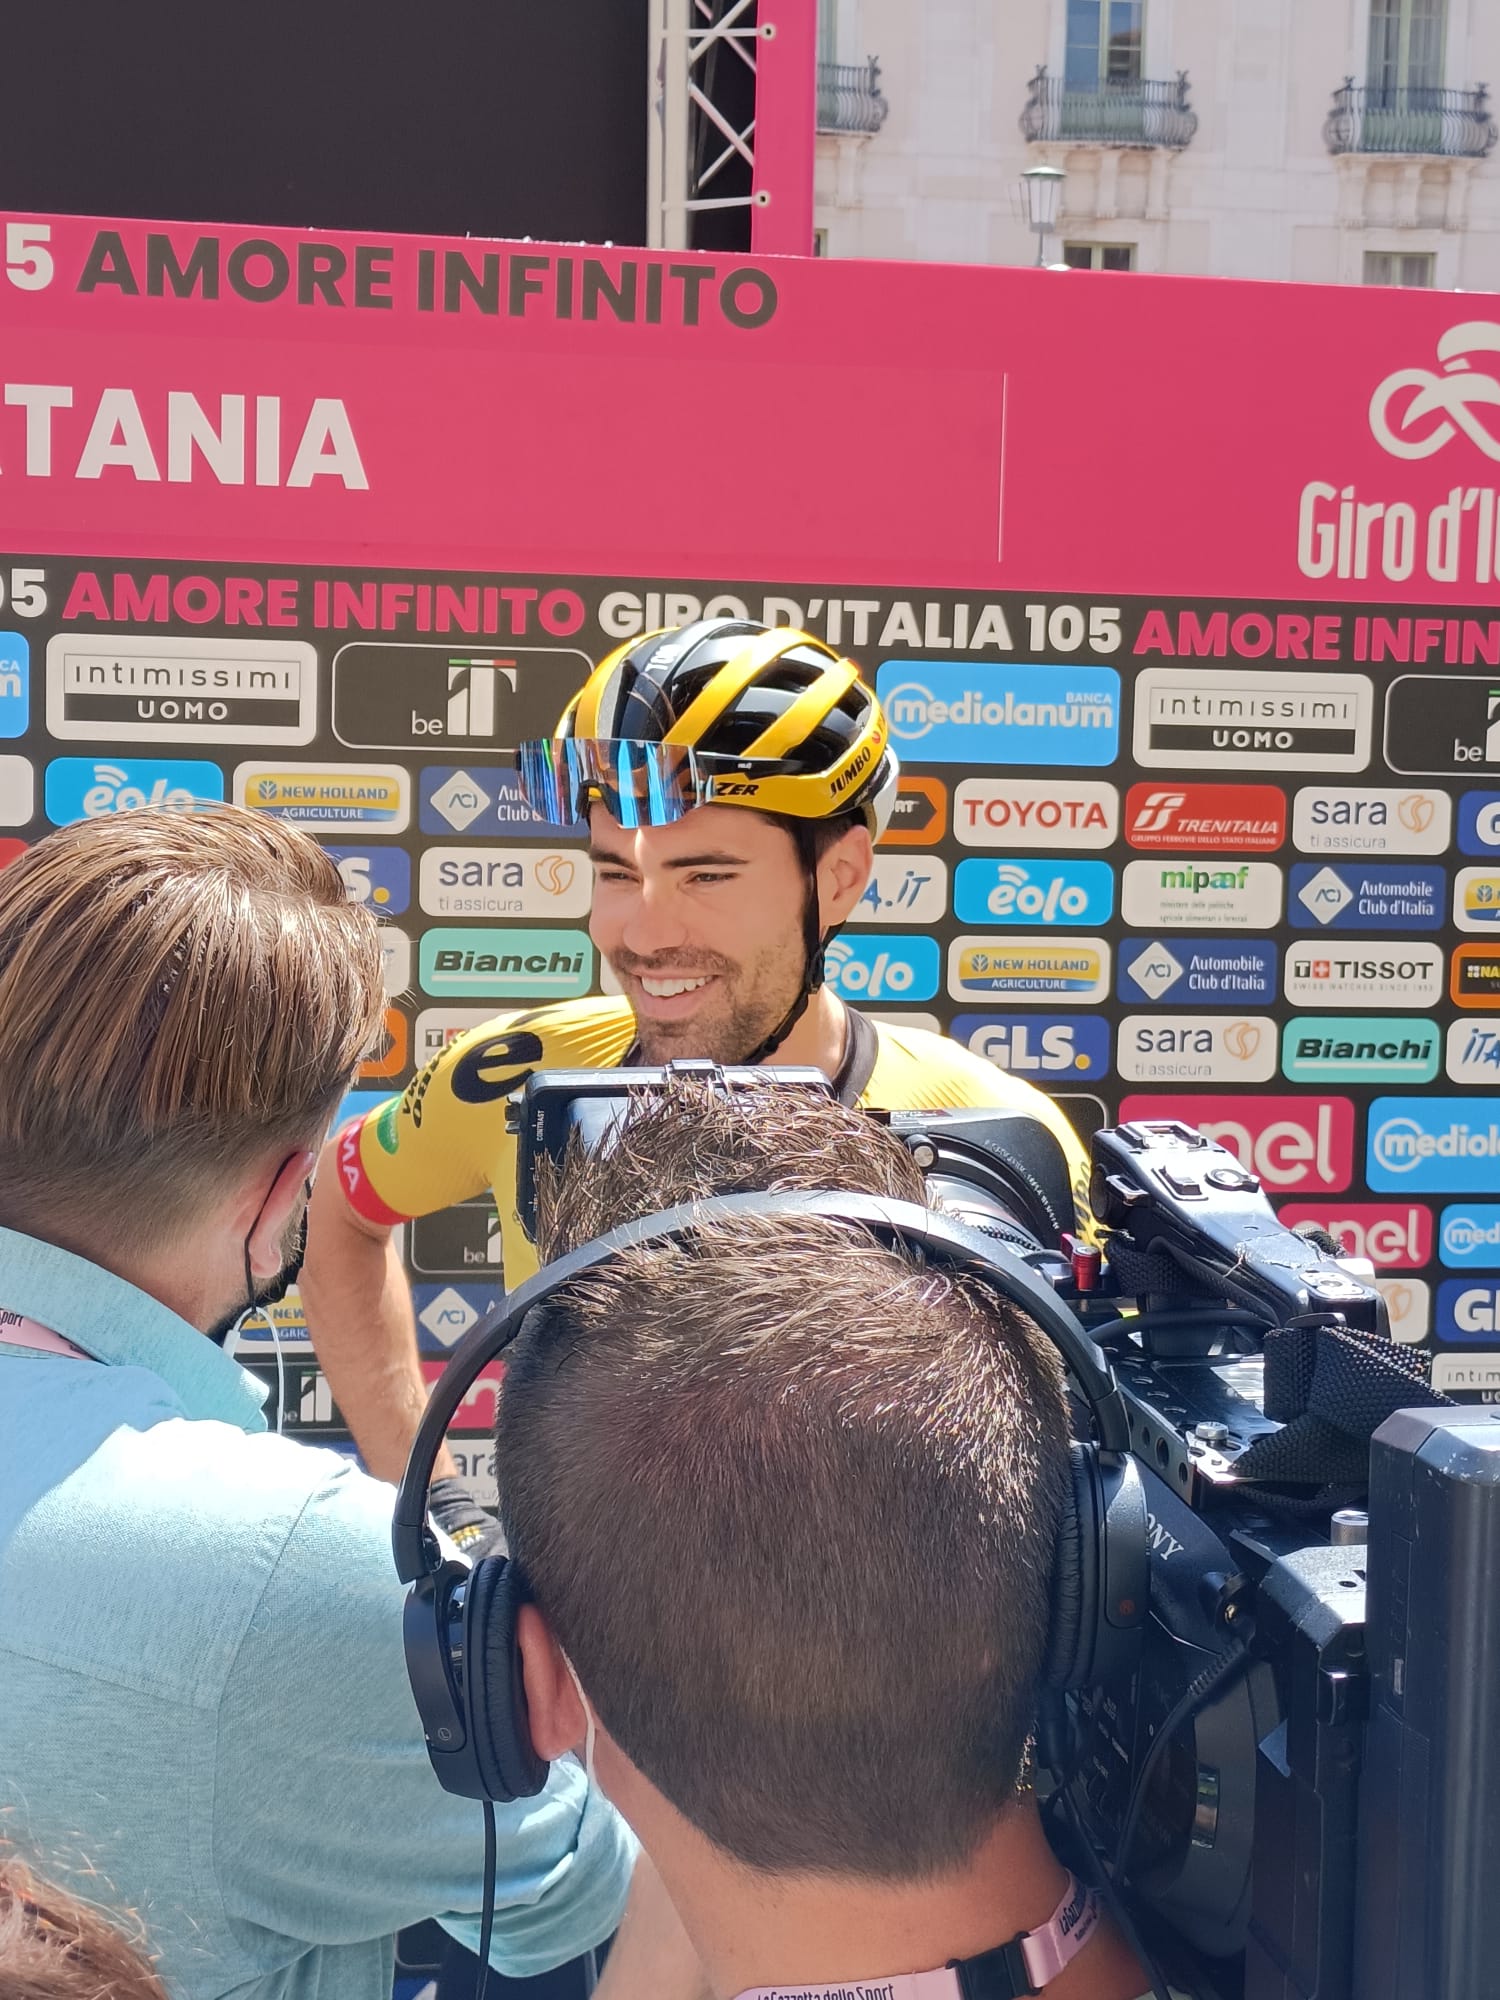 Giro d'Italia a Catania, accoglienza super per Nibali e Puccio QdS